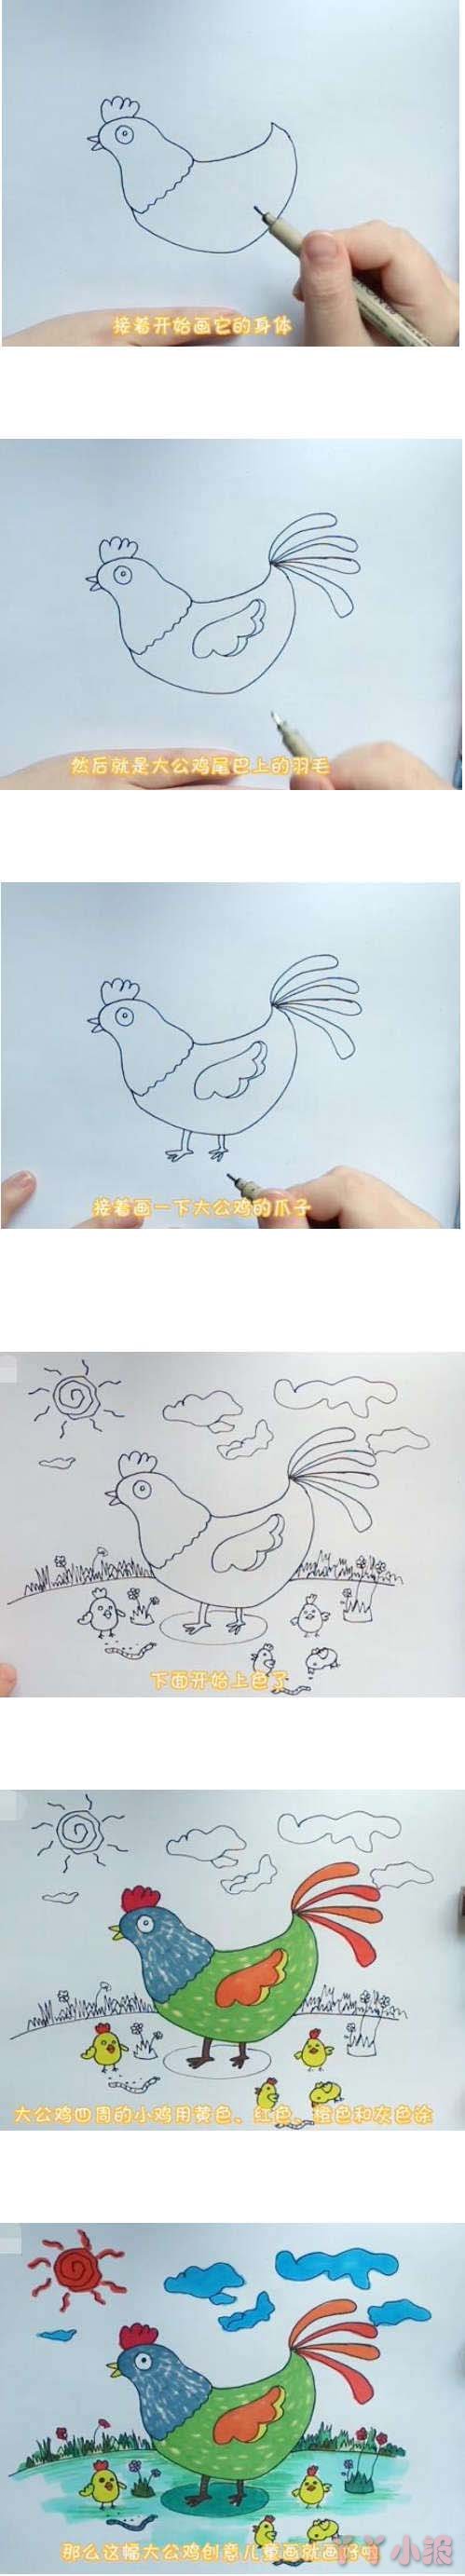 教你画大公鸡的简笔画简单好看带步骤彩绘